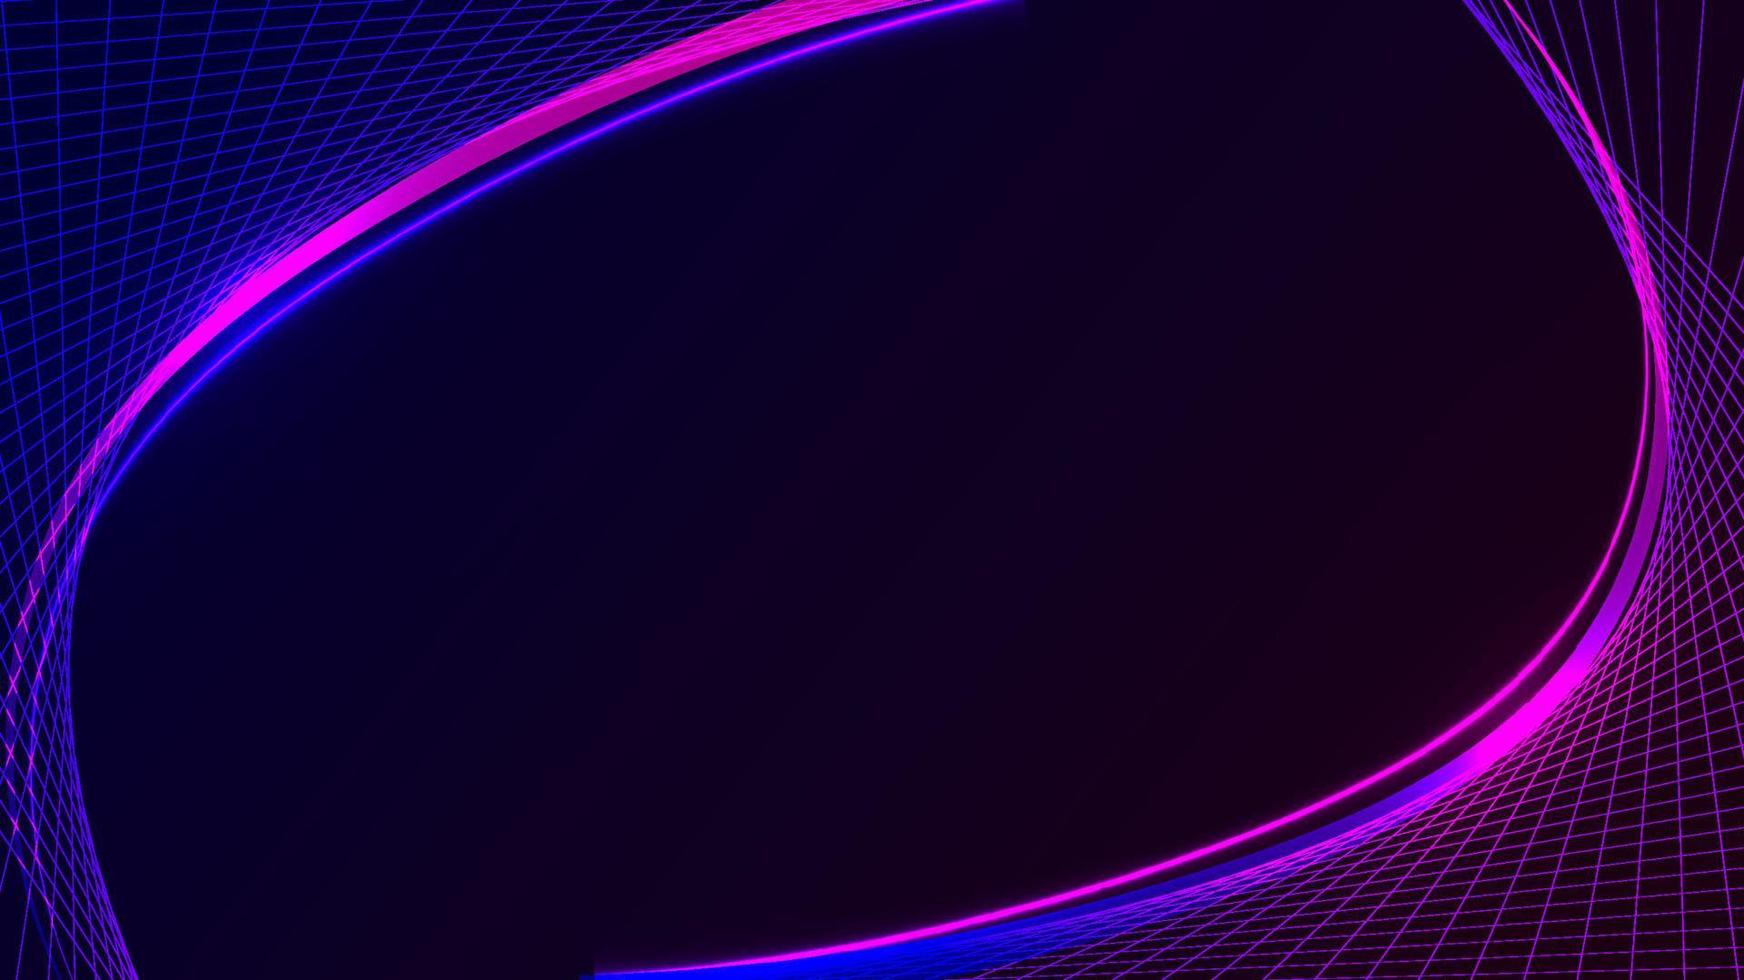 modelo de tecnologia abstrata linhas de grade azul e rosa com efeito de iluminação neon em fundo preto vetor